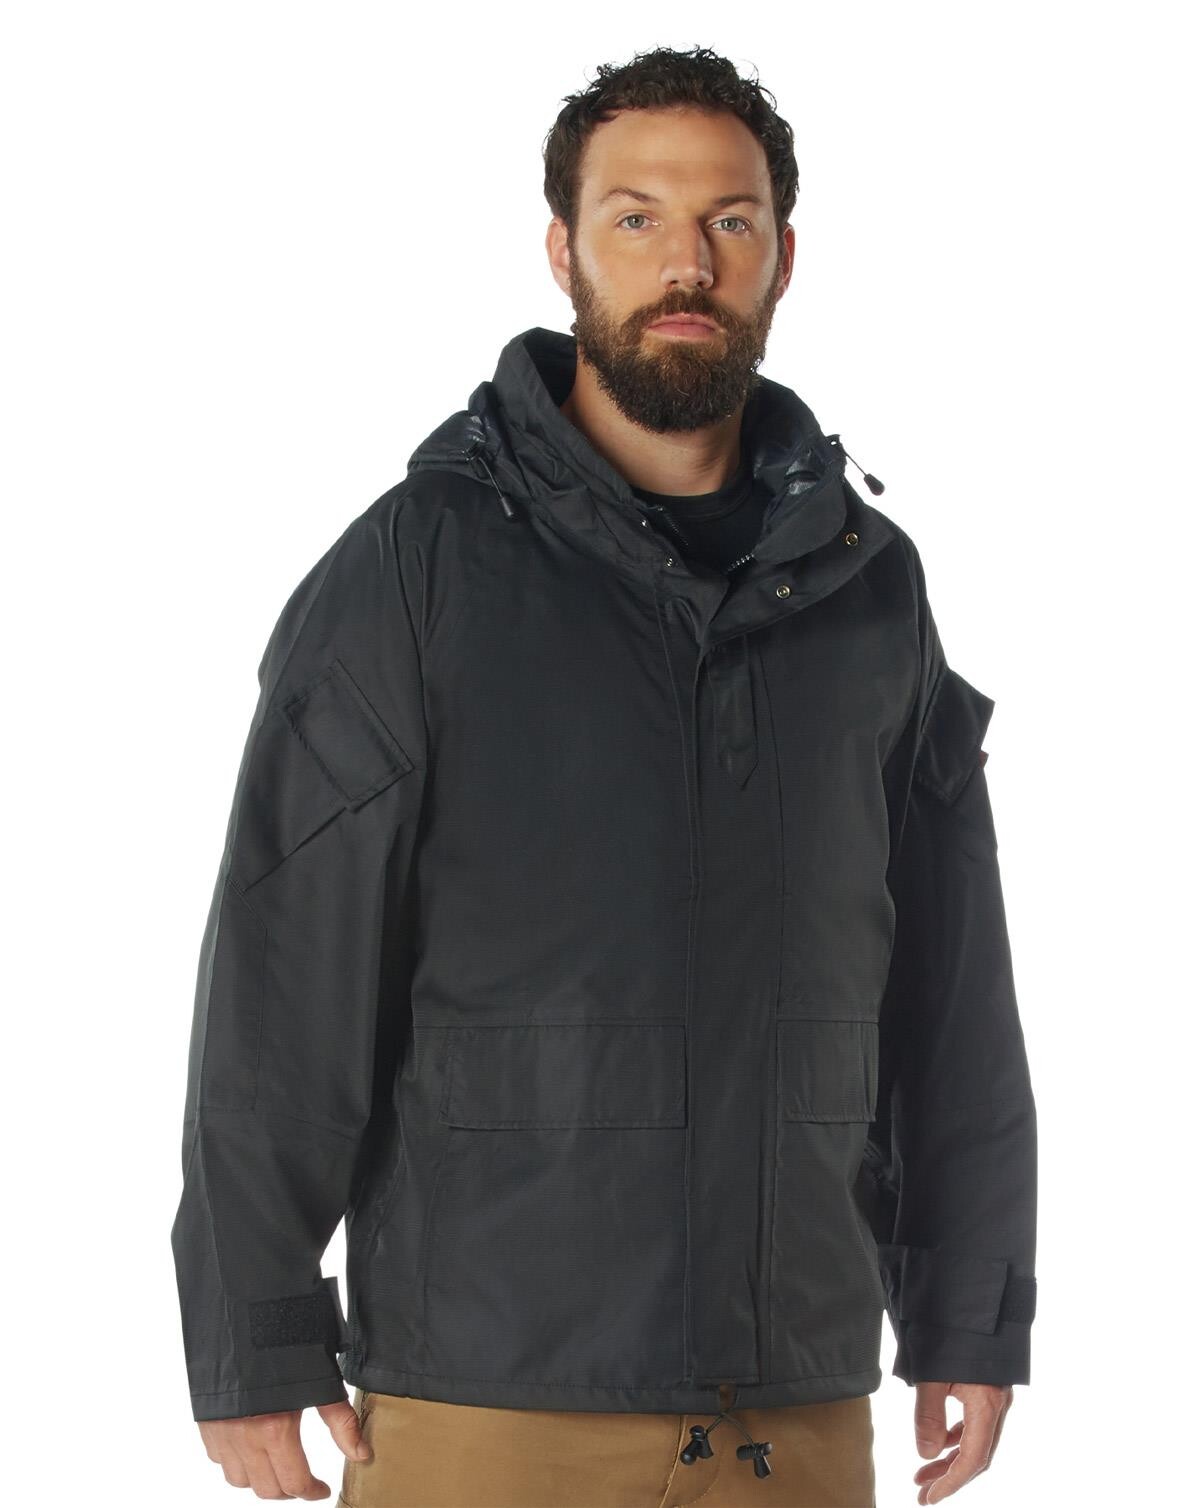 Rothco Tactical Hard Shell Waterproof Jacket (Sort, S)